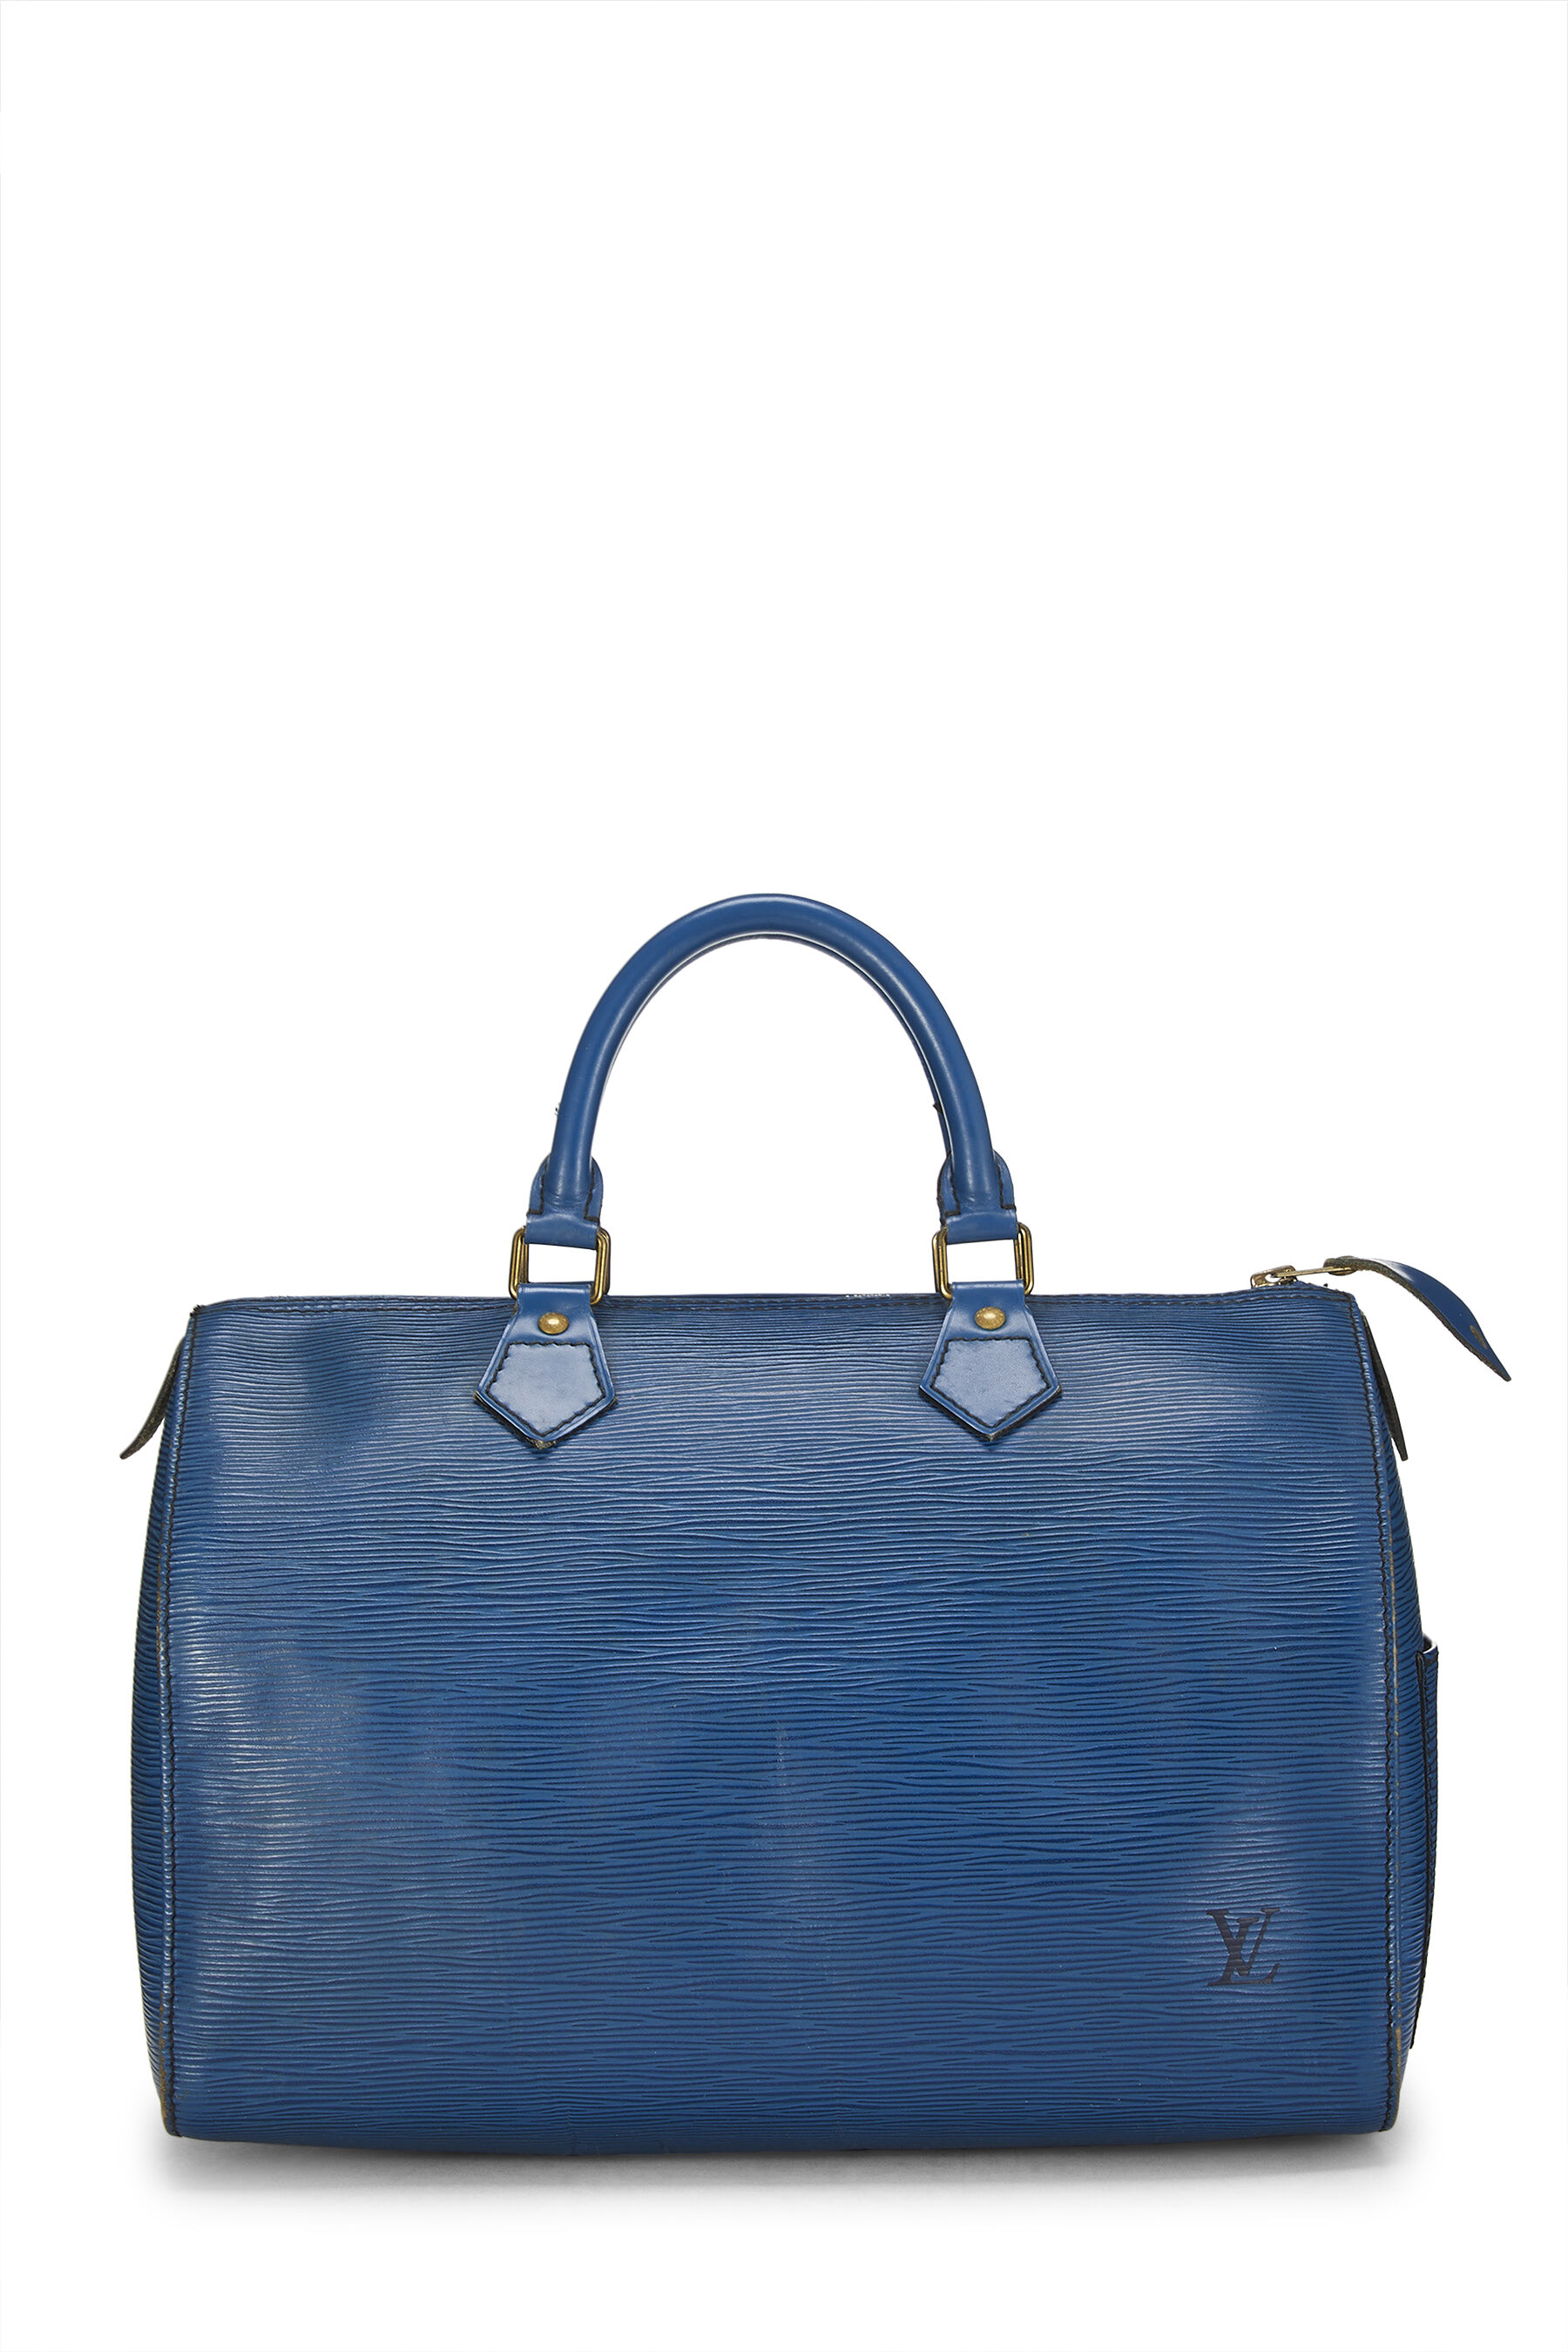 Louis Vuitton - Blue EPI Speedy 30